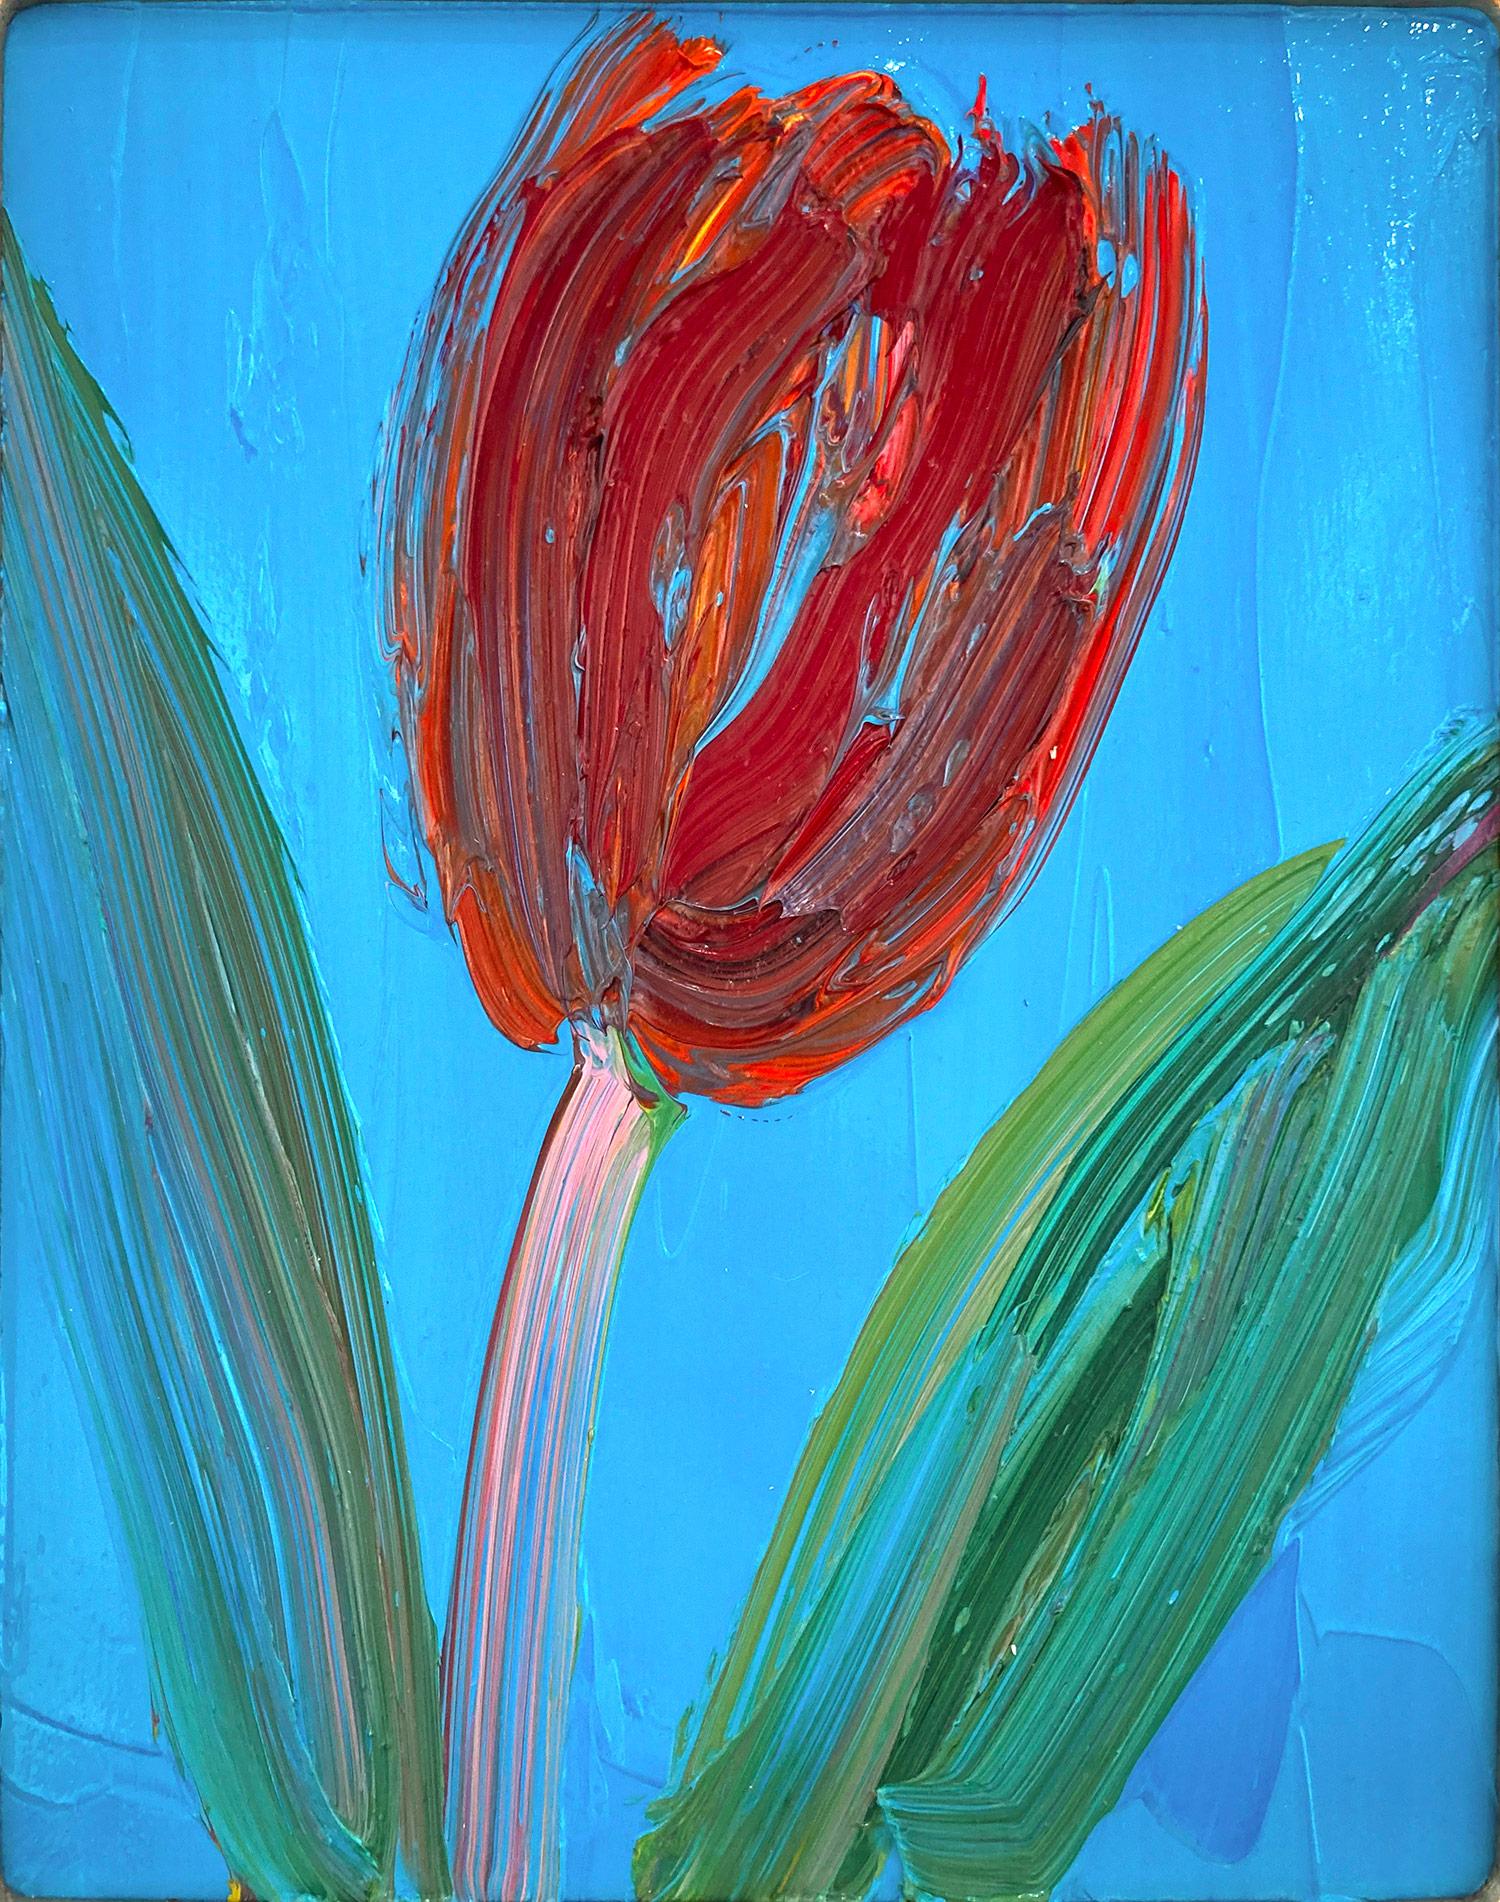 « Pink Stem », tulipe rouge sur fond bleu céruléen clair, peinture à l'huile encadrée - Painting de Hunt Slonem